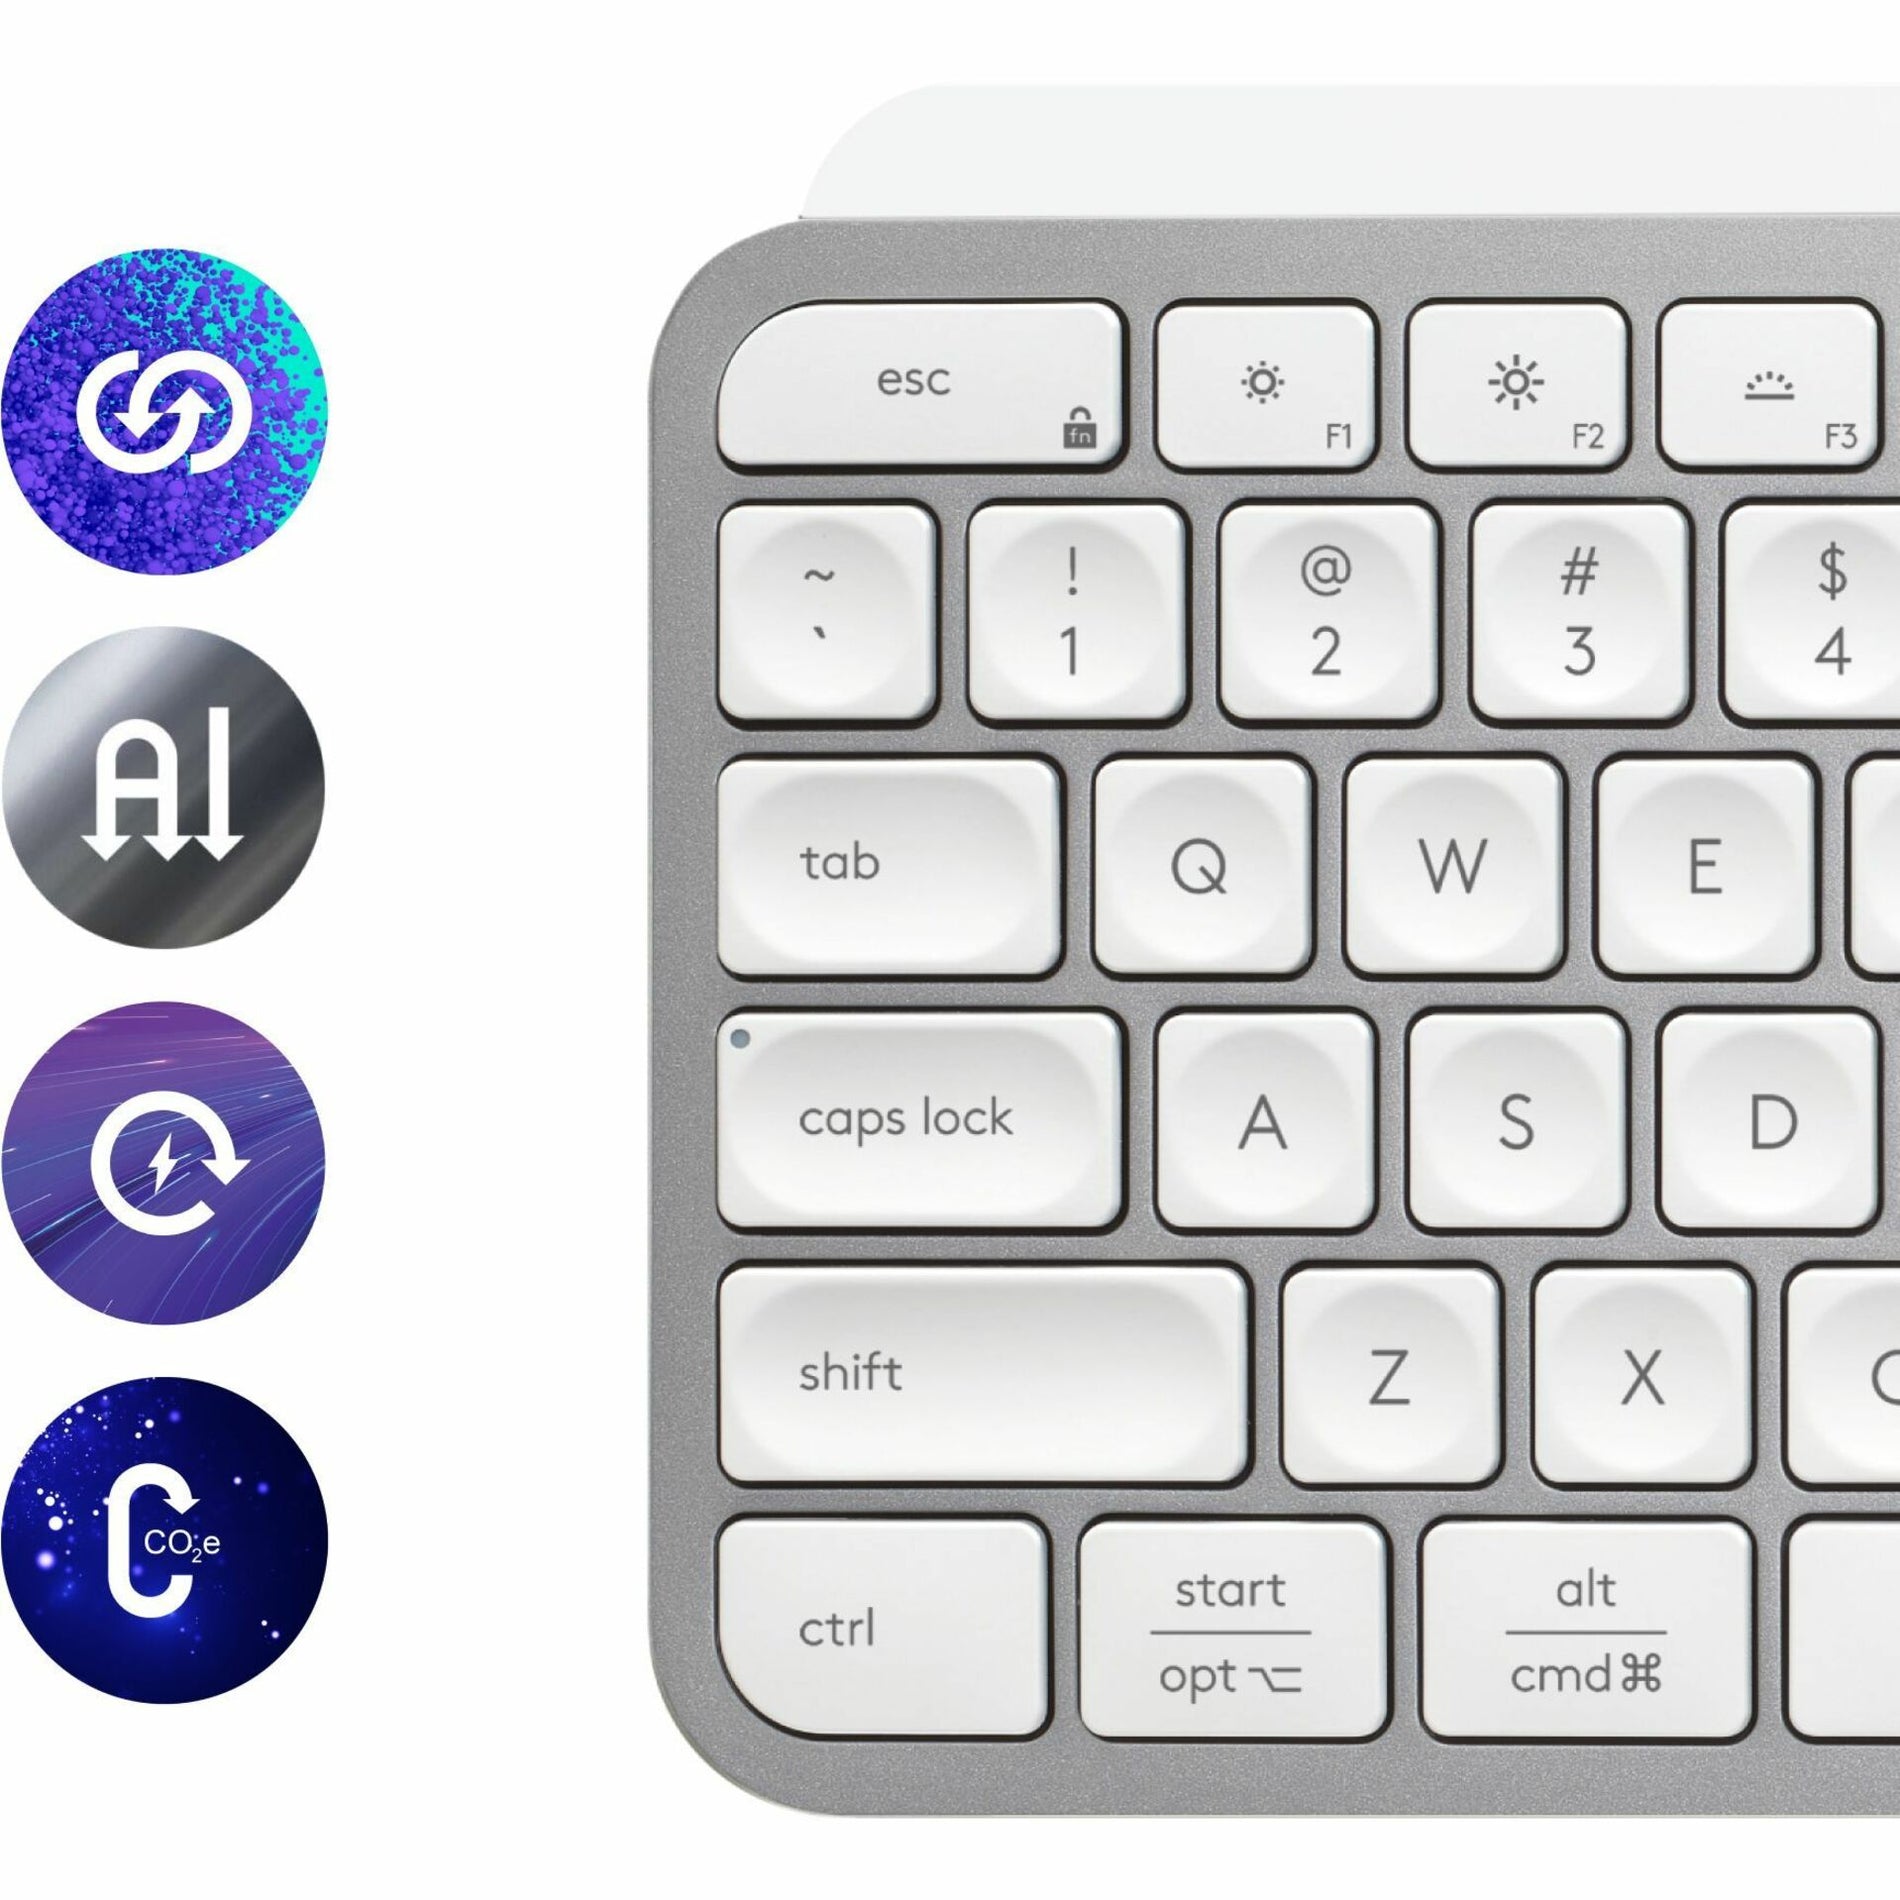 Logitech 920-011559 MX Keys S (Pale Grey) Keyboard, Backlit, Rechargeable, Bluetooth, Wireless